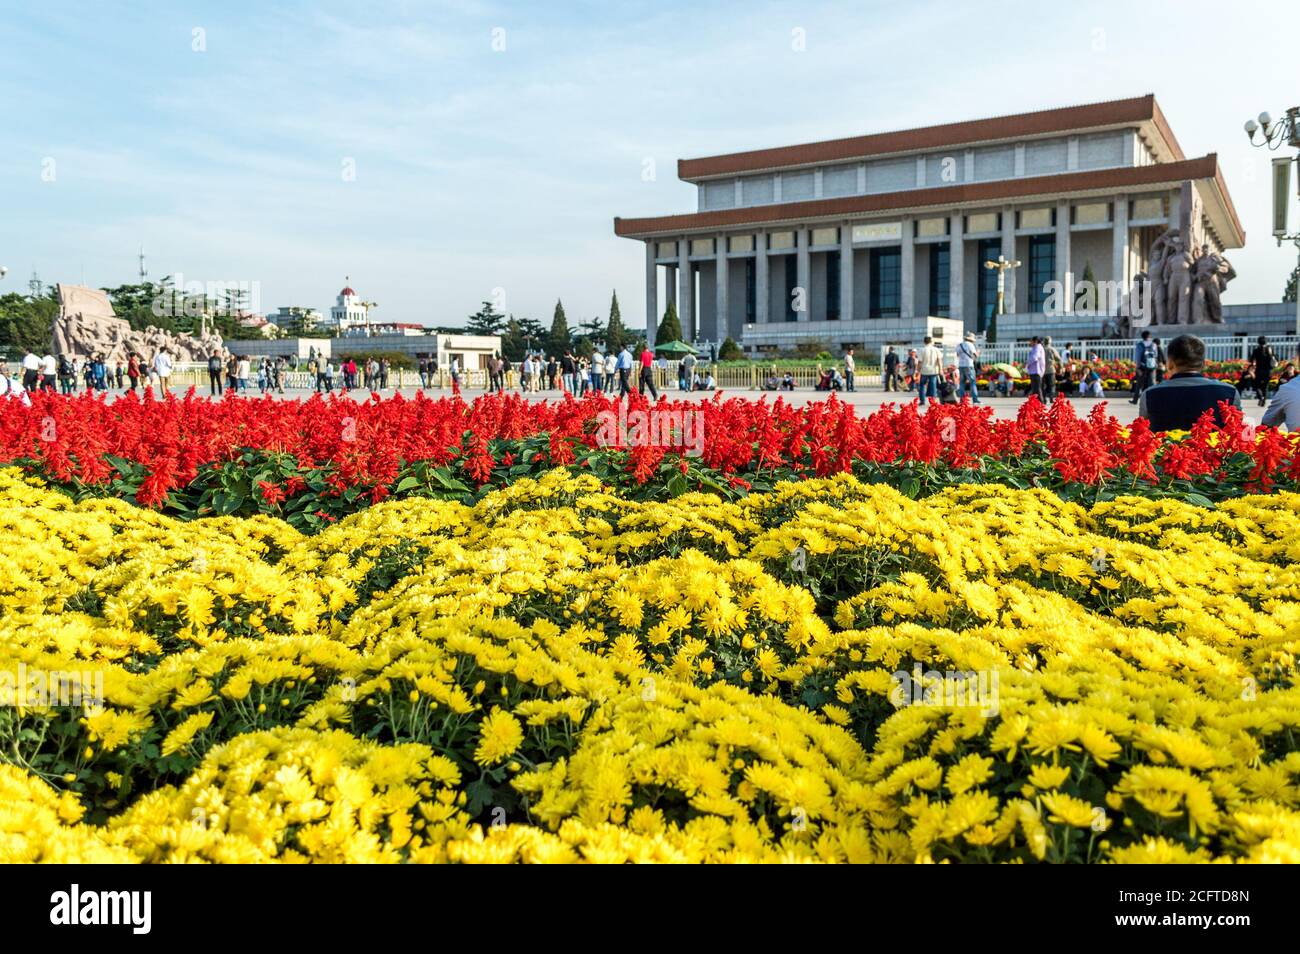 Pékin / Chine - 27 septembre 2014 : exposition de fleurs colorées installée sur la place Tiananmen à Pékin avant une fête nationale, le jour national du TH Banque D'Images